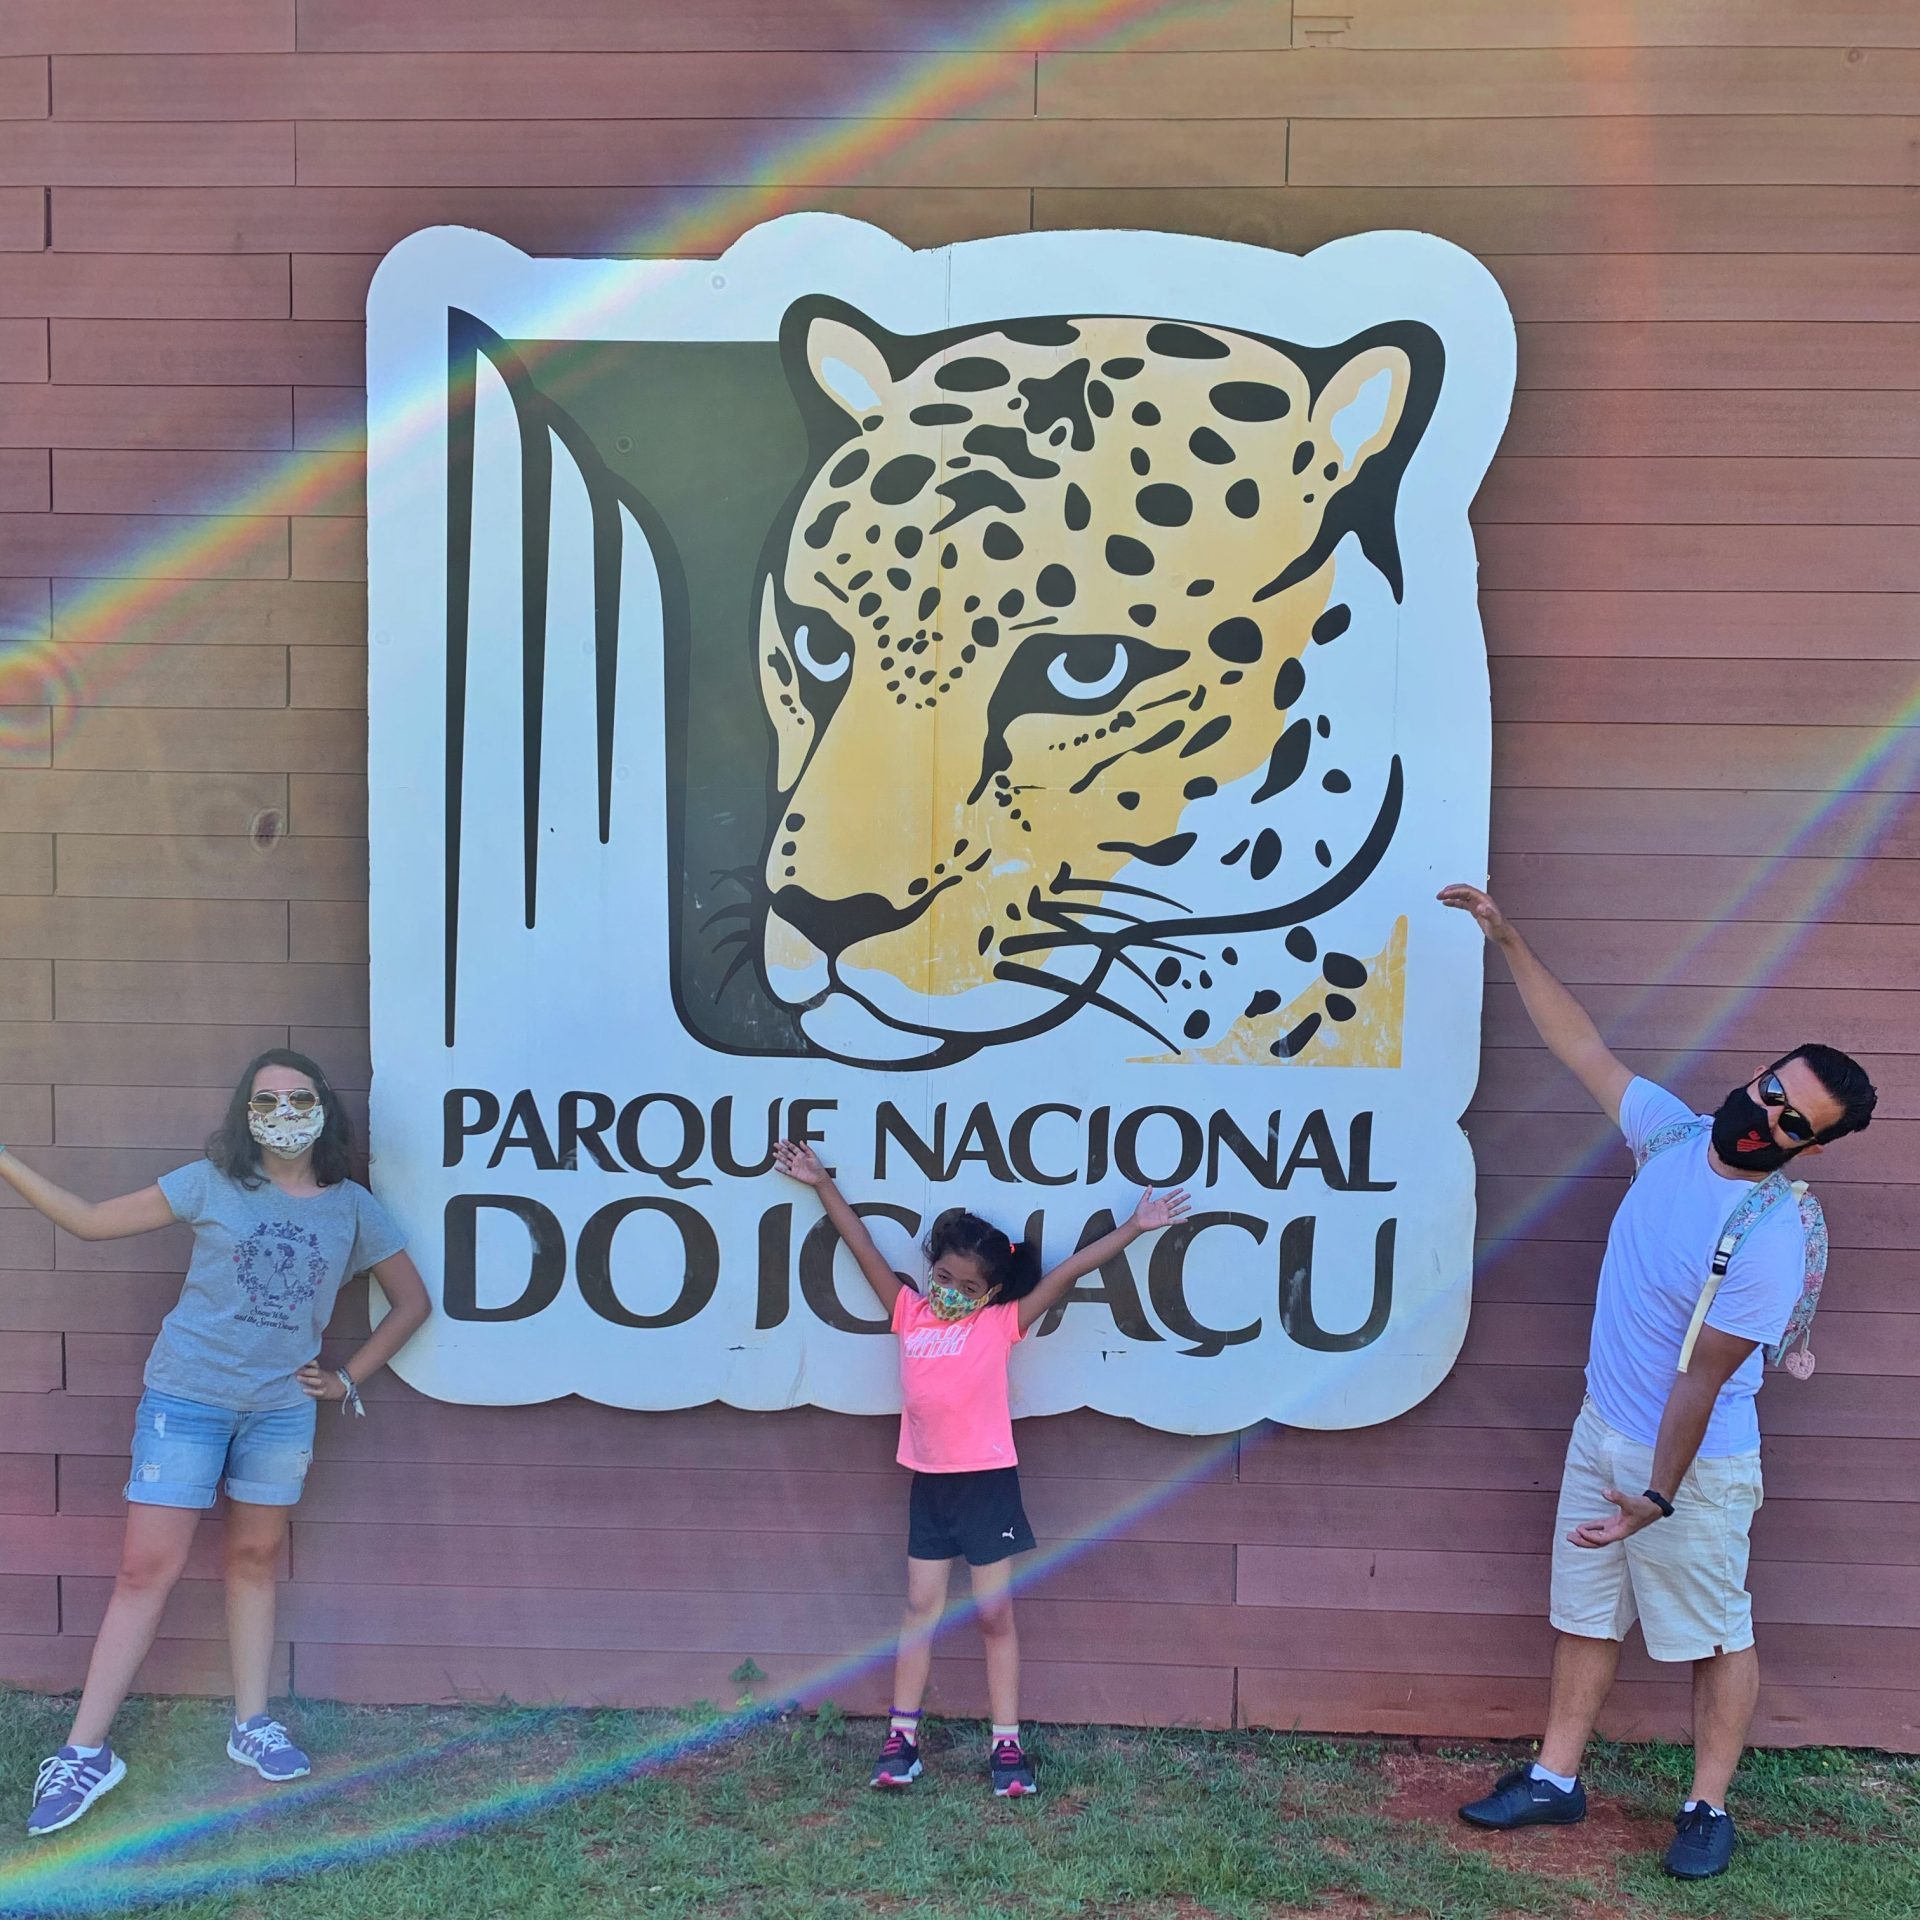 Nesse mês de fevereiro/21, nos visitamos Foz do Iguaçu com as crianças (Ana Júlia, aos 6 e Manuela, aos 12). Fizemos vários passeios legais. Abaixo eu conto resumidamente como foi visitar as Cataratas do Iguaçu com crianças.